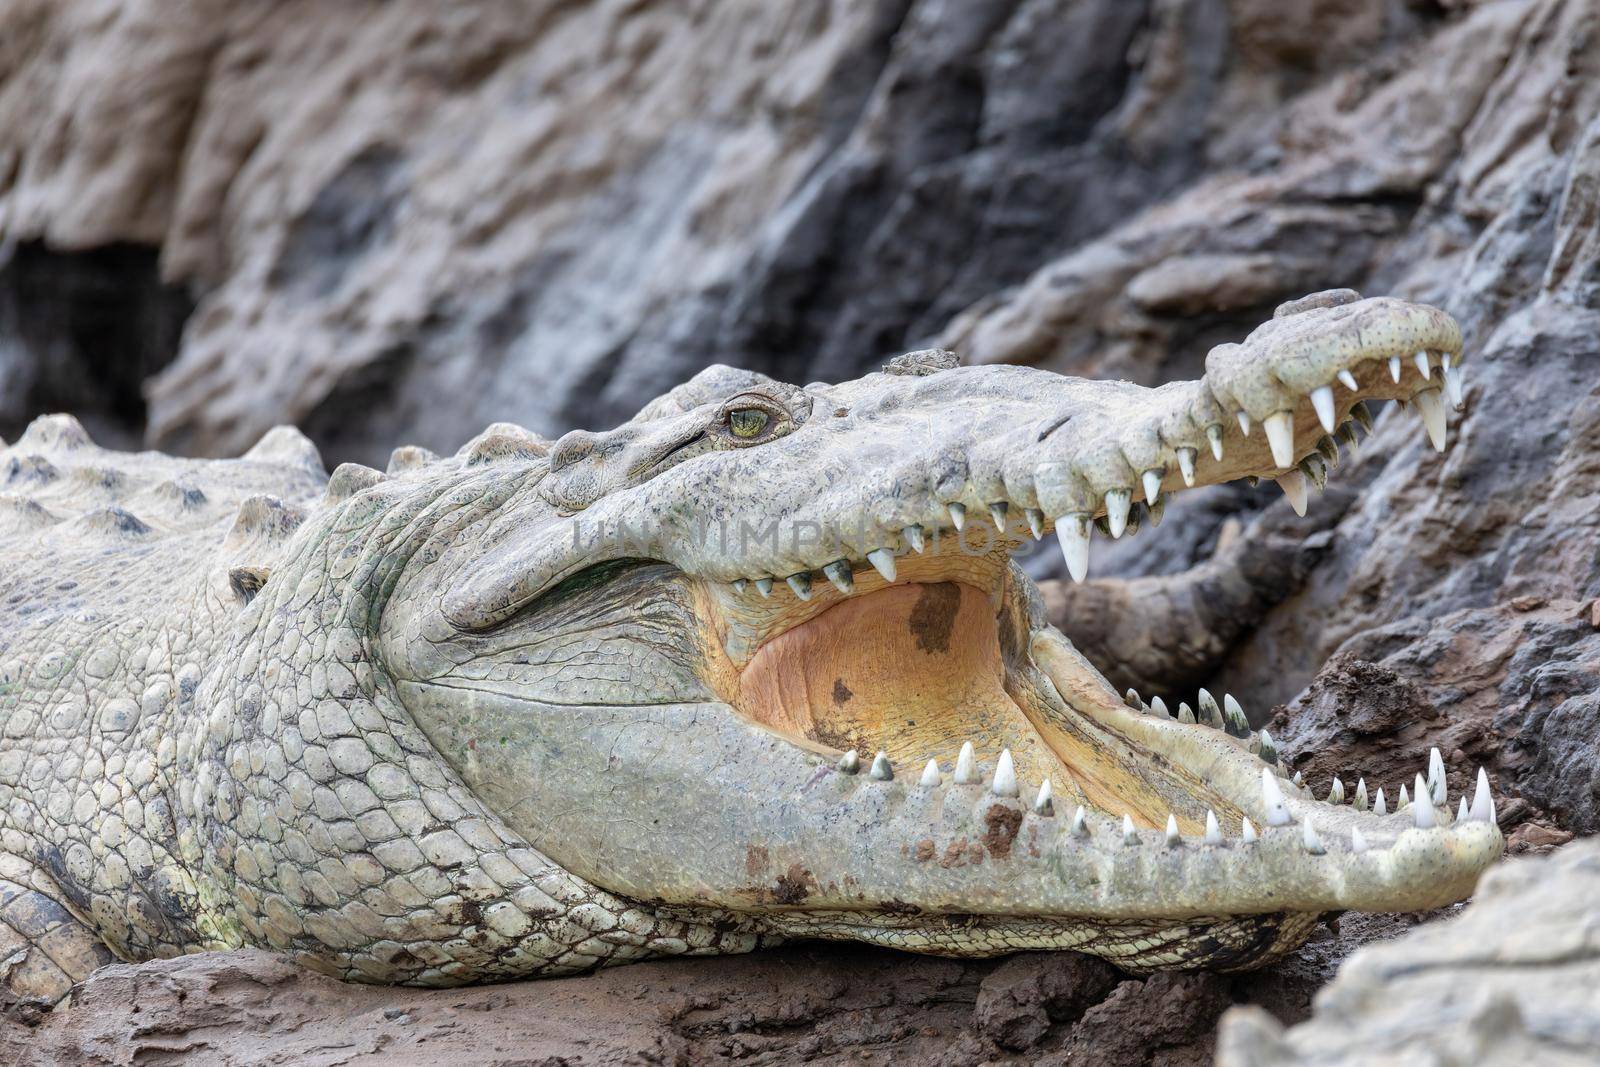 American crocodile, Crocodylus acutus, river Rio Tarcoles, Costa Rica Wildlife by artush